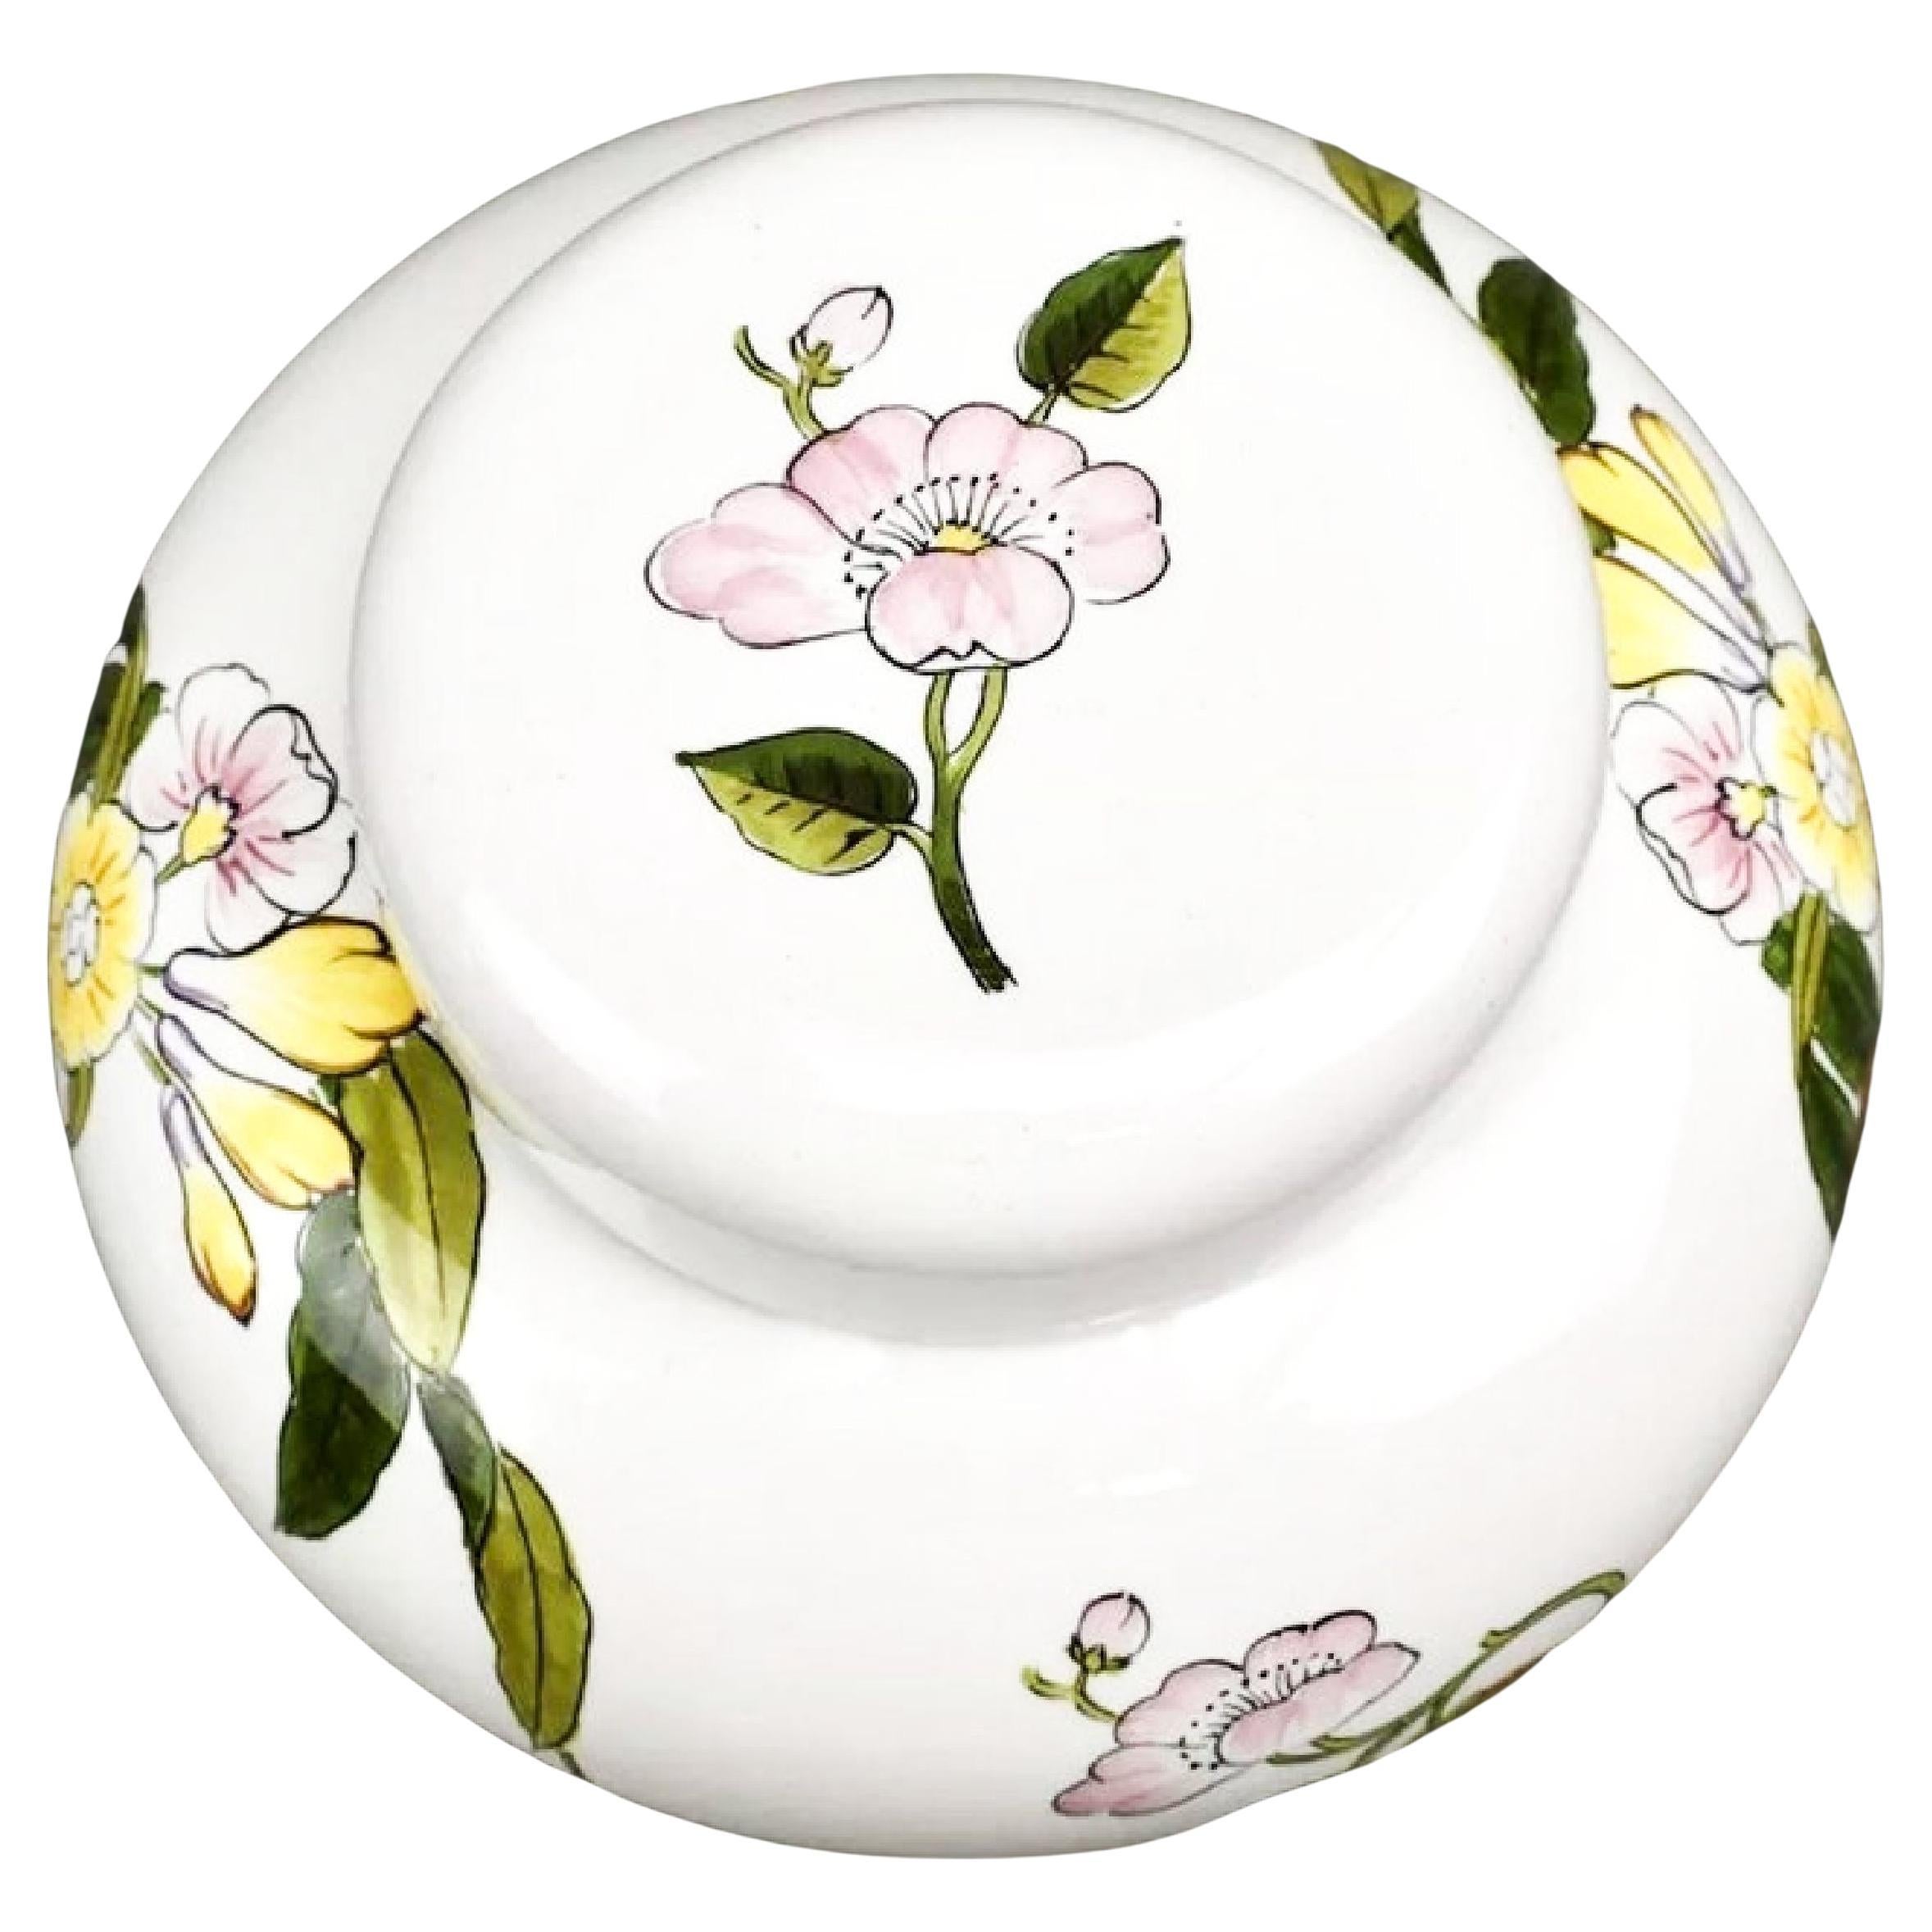 Este Ceramiche pour Tiffany & Co. Vase et couvercle en porcelaine à motifs floraux peints à la main, urne ou peut-être même une boîte à biscuits. Belle pièce rare. Le placement magnifique des fleurs, accentue la forme de bulle du récipient. 